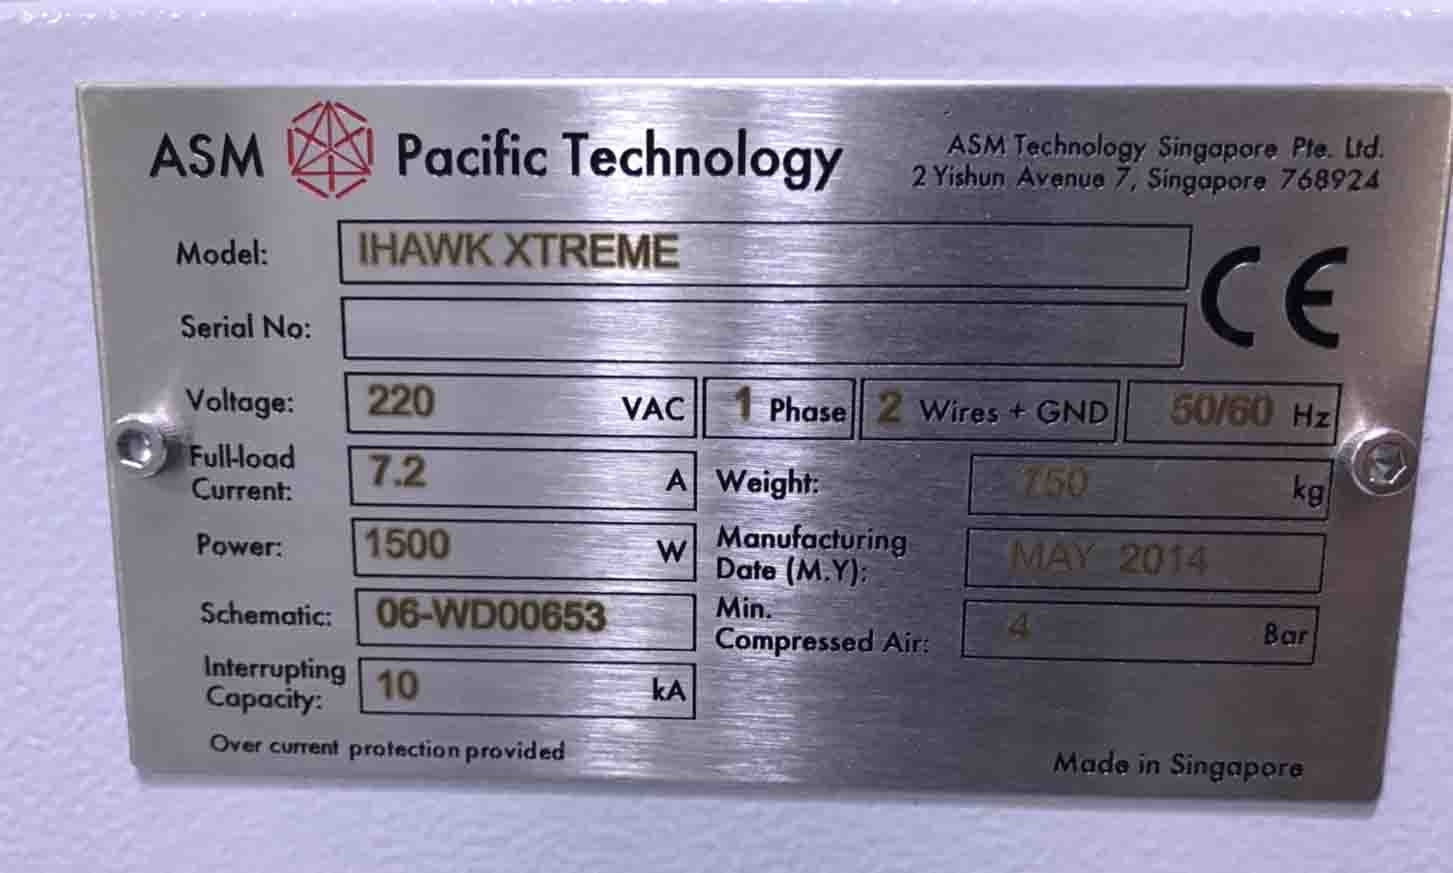 图为 已使用的 ASM iHawk Xtreme 待售